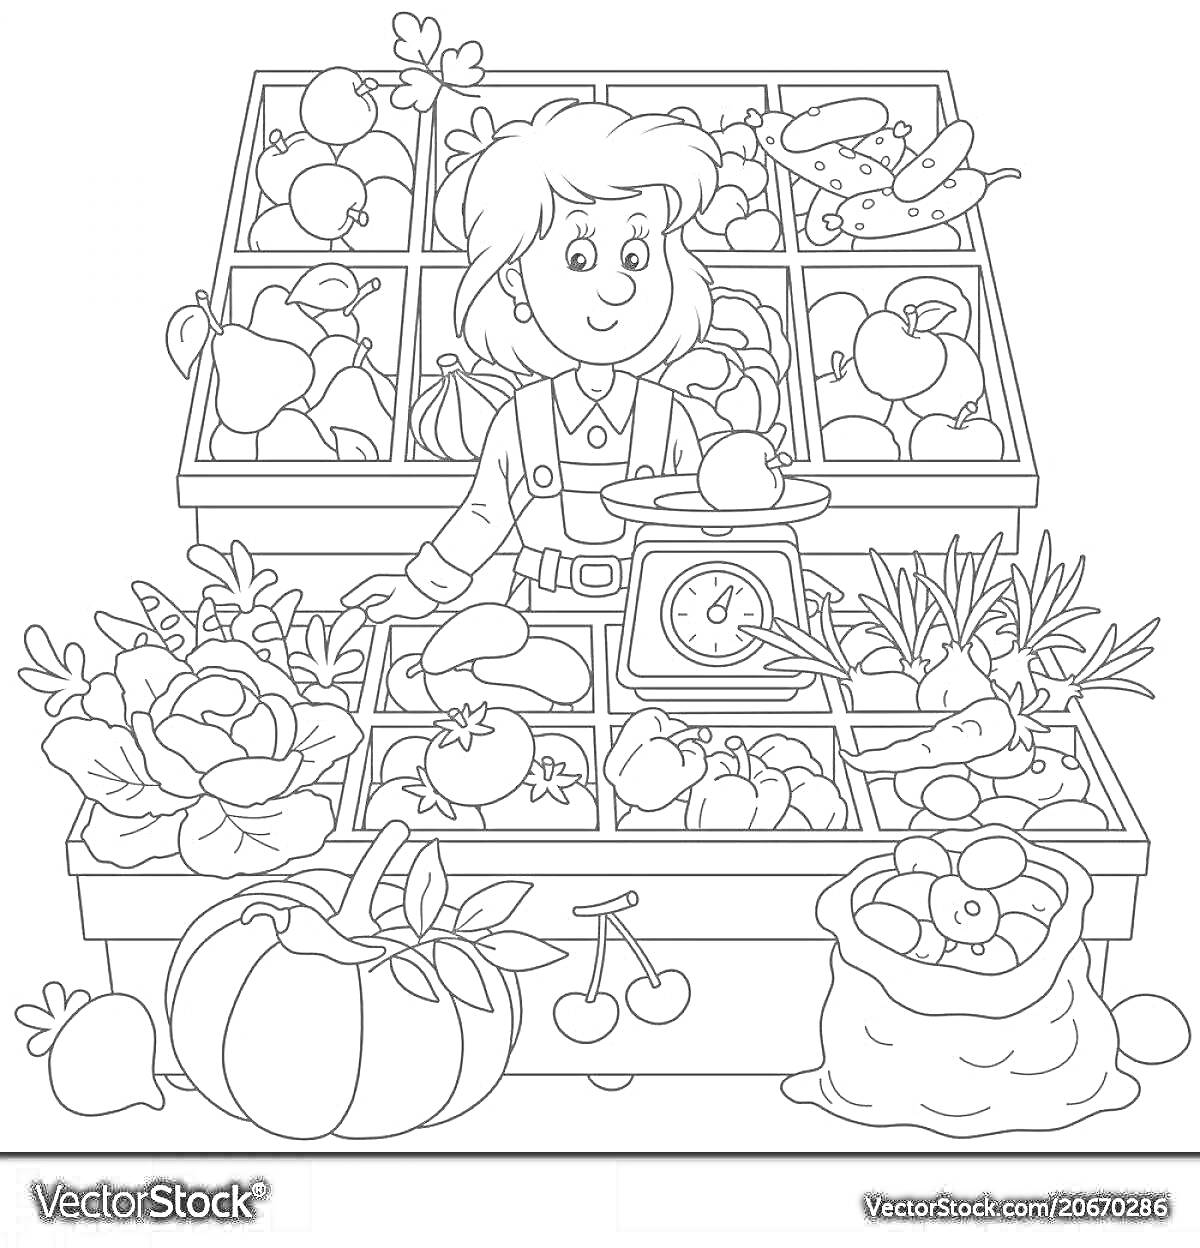 На раскраске изображено: 4-5 лет, Продавец, Овощи, Фрукты, Весы, Прилавок, Обучение